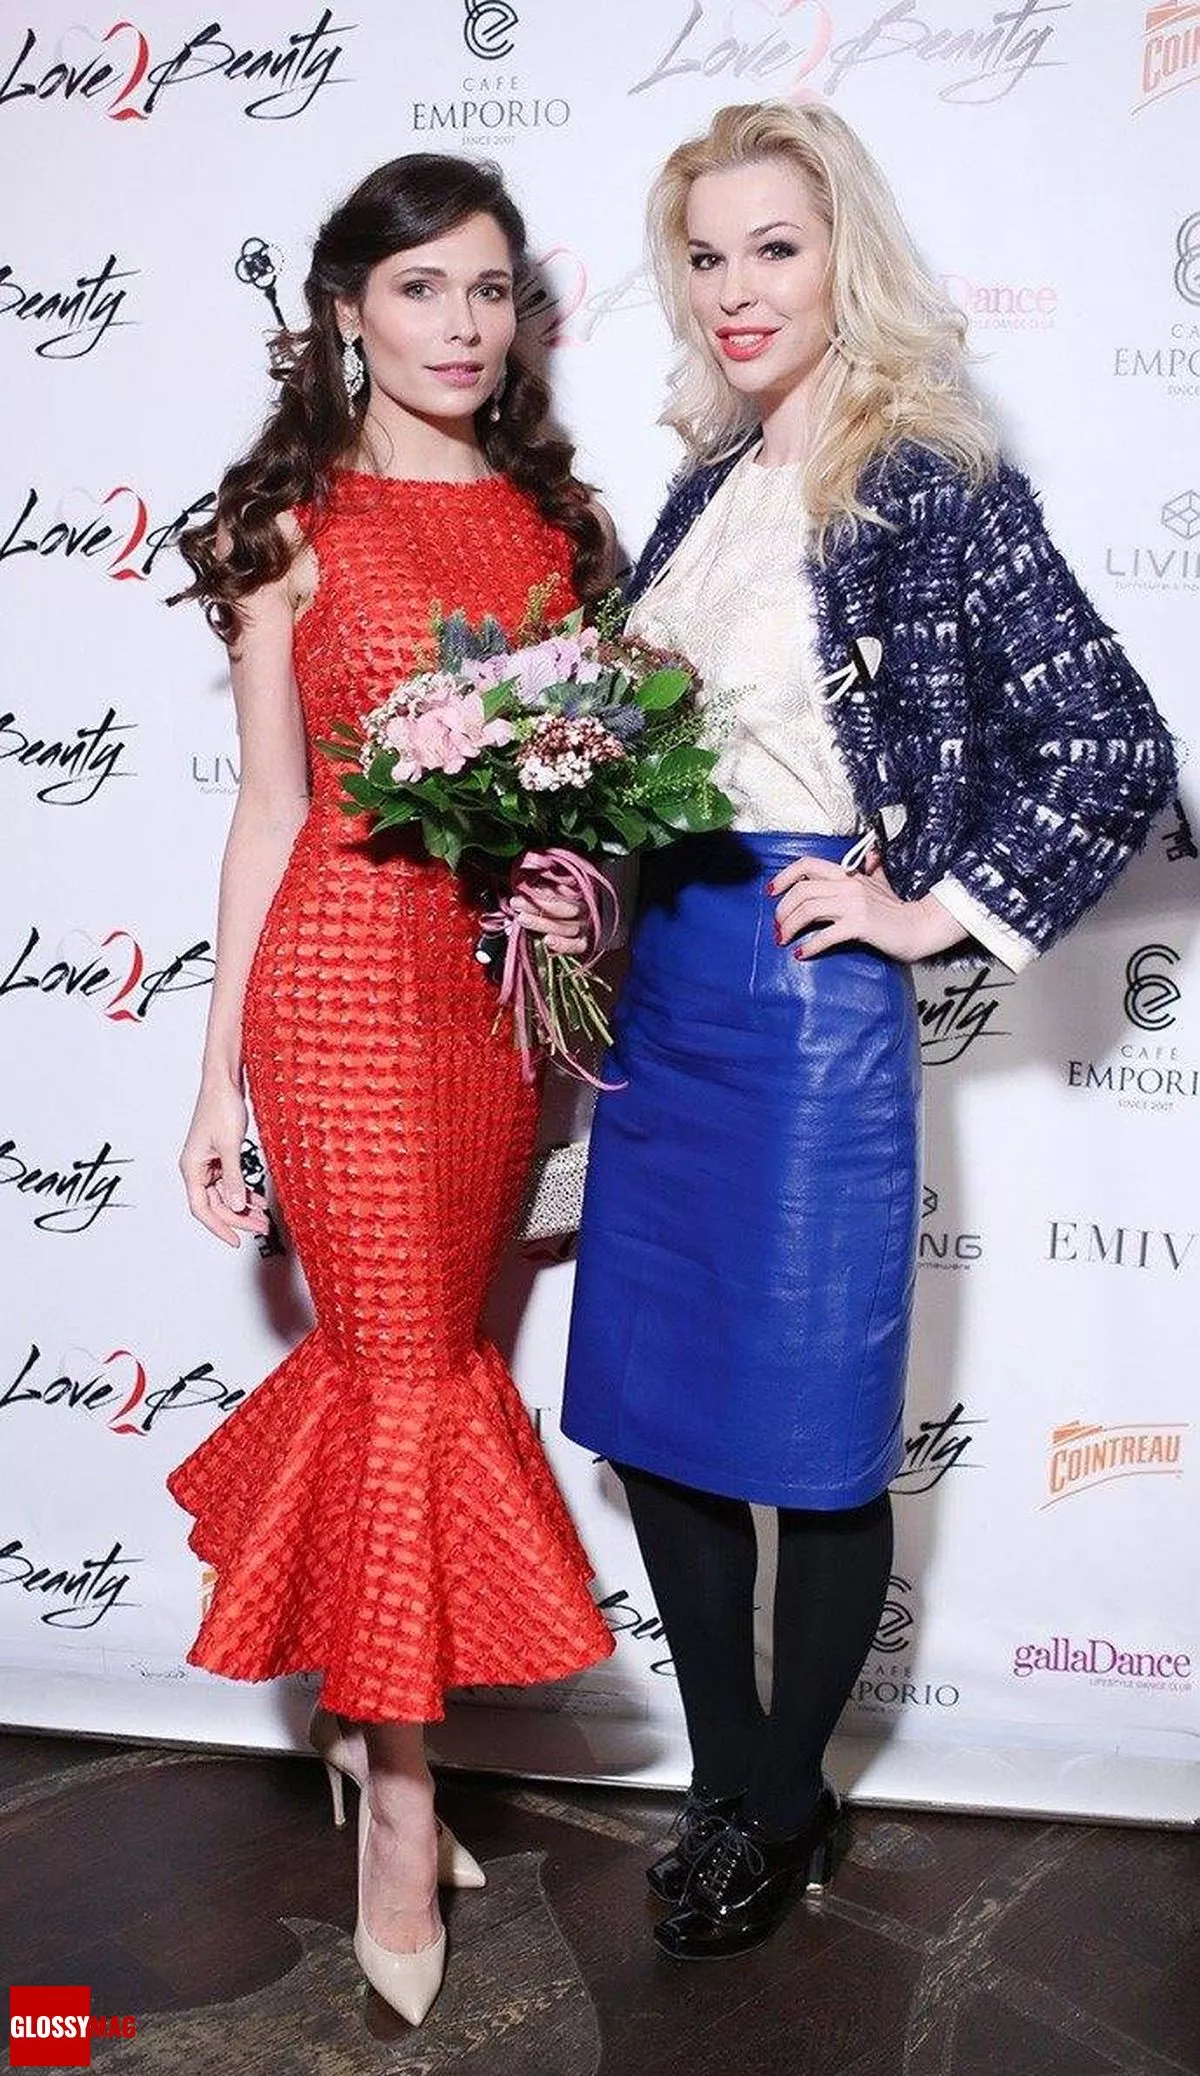 Полина Аскери, Малена Маяковская на праздновании 2-летия Love2Beauty.ru в EMPORIO CAFE, 20 ноября 2014 г.